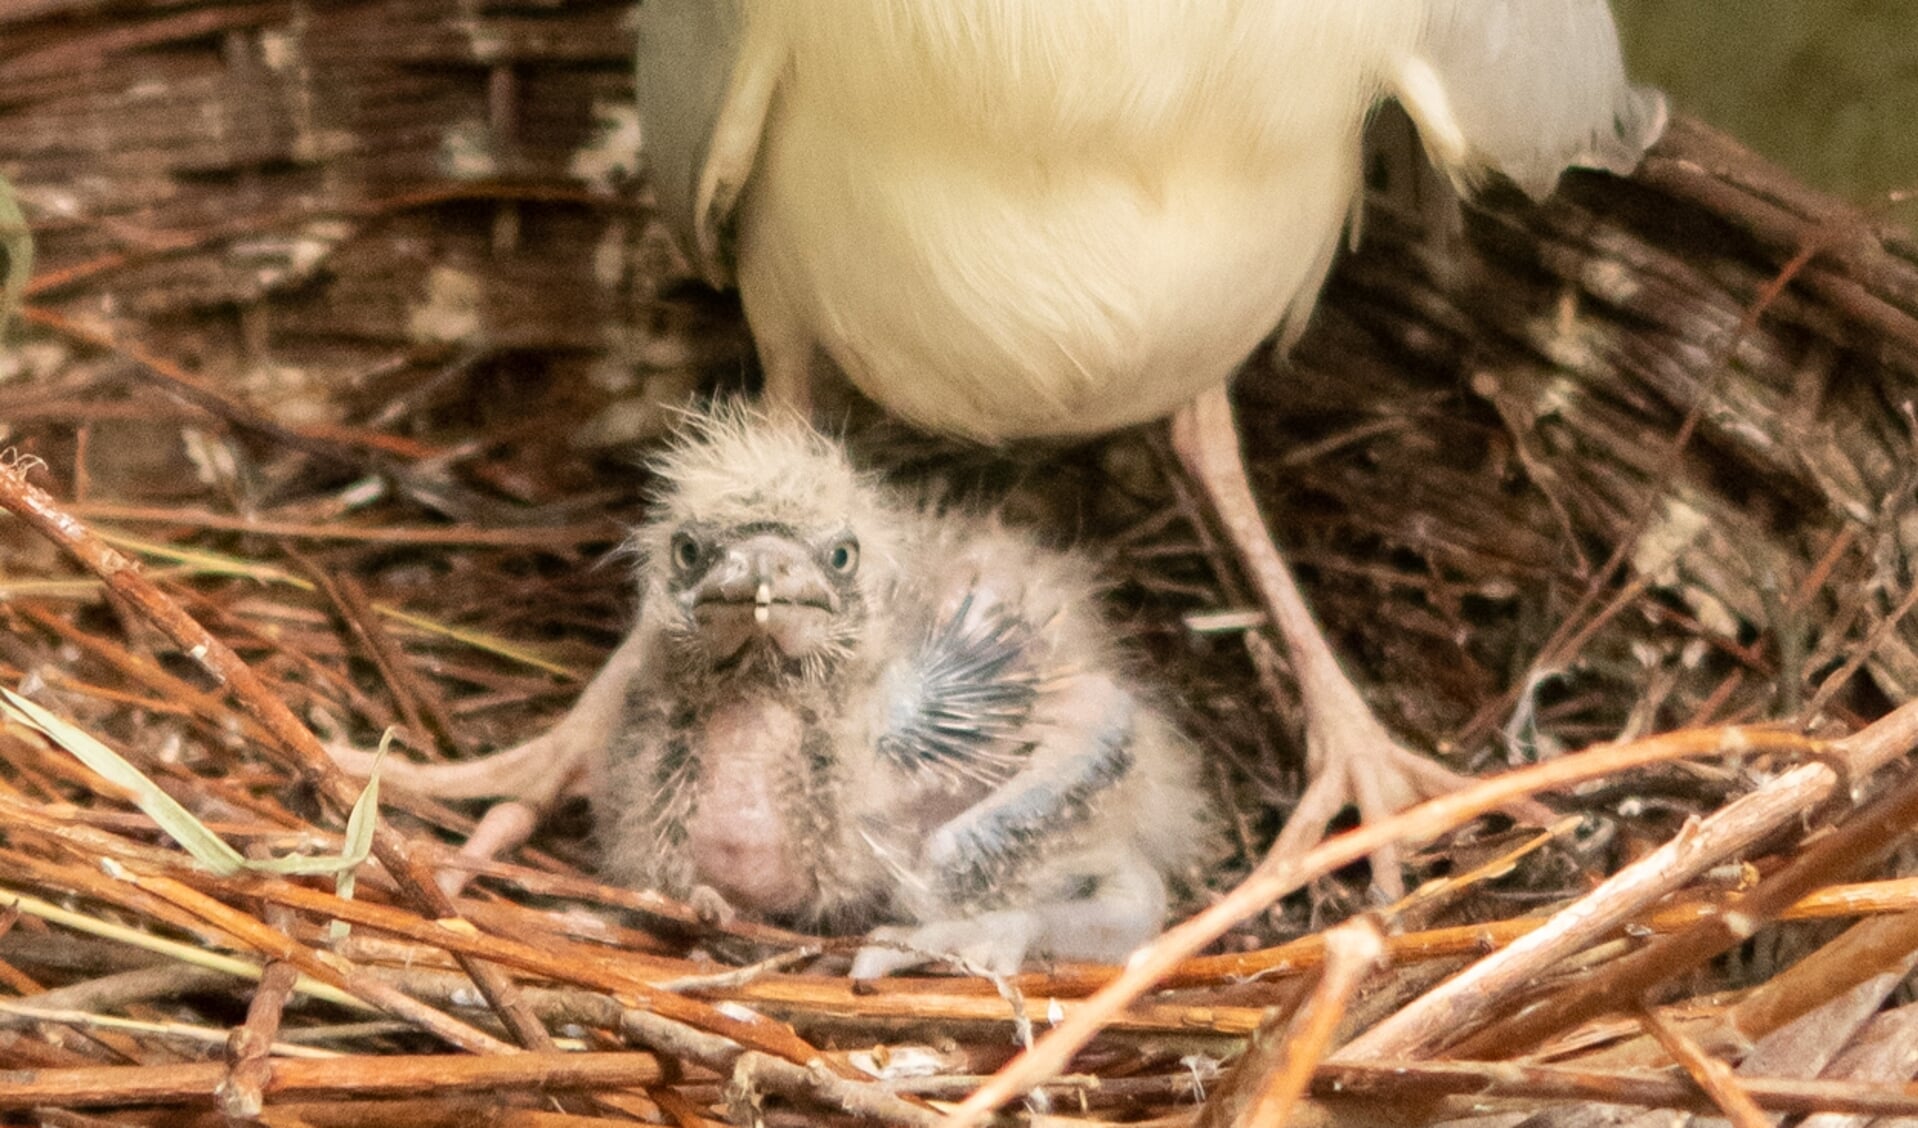 Het mannetje en vrouwtje bouwen samen aan een nest om eieren in te leggen. Wanneer er een koppel ontstaat, blijft het kwakkenstel de rest van hun leven samen.